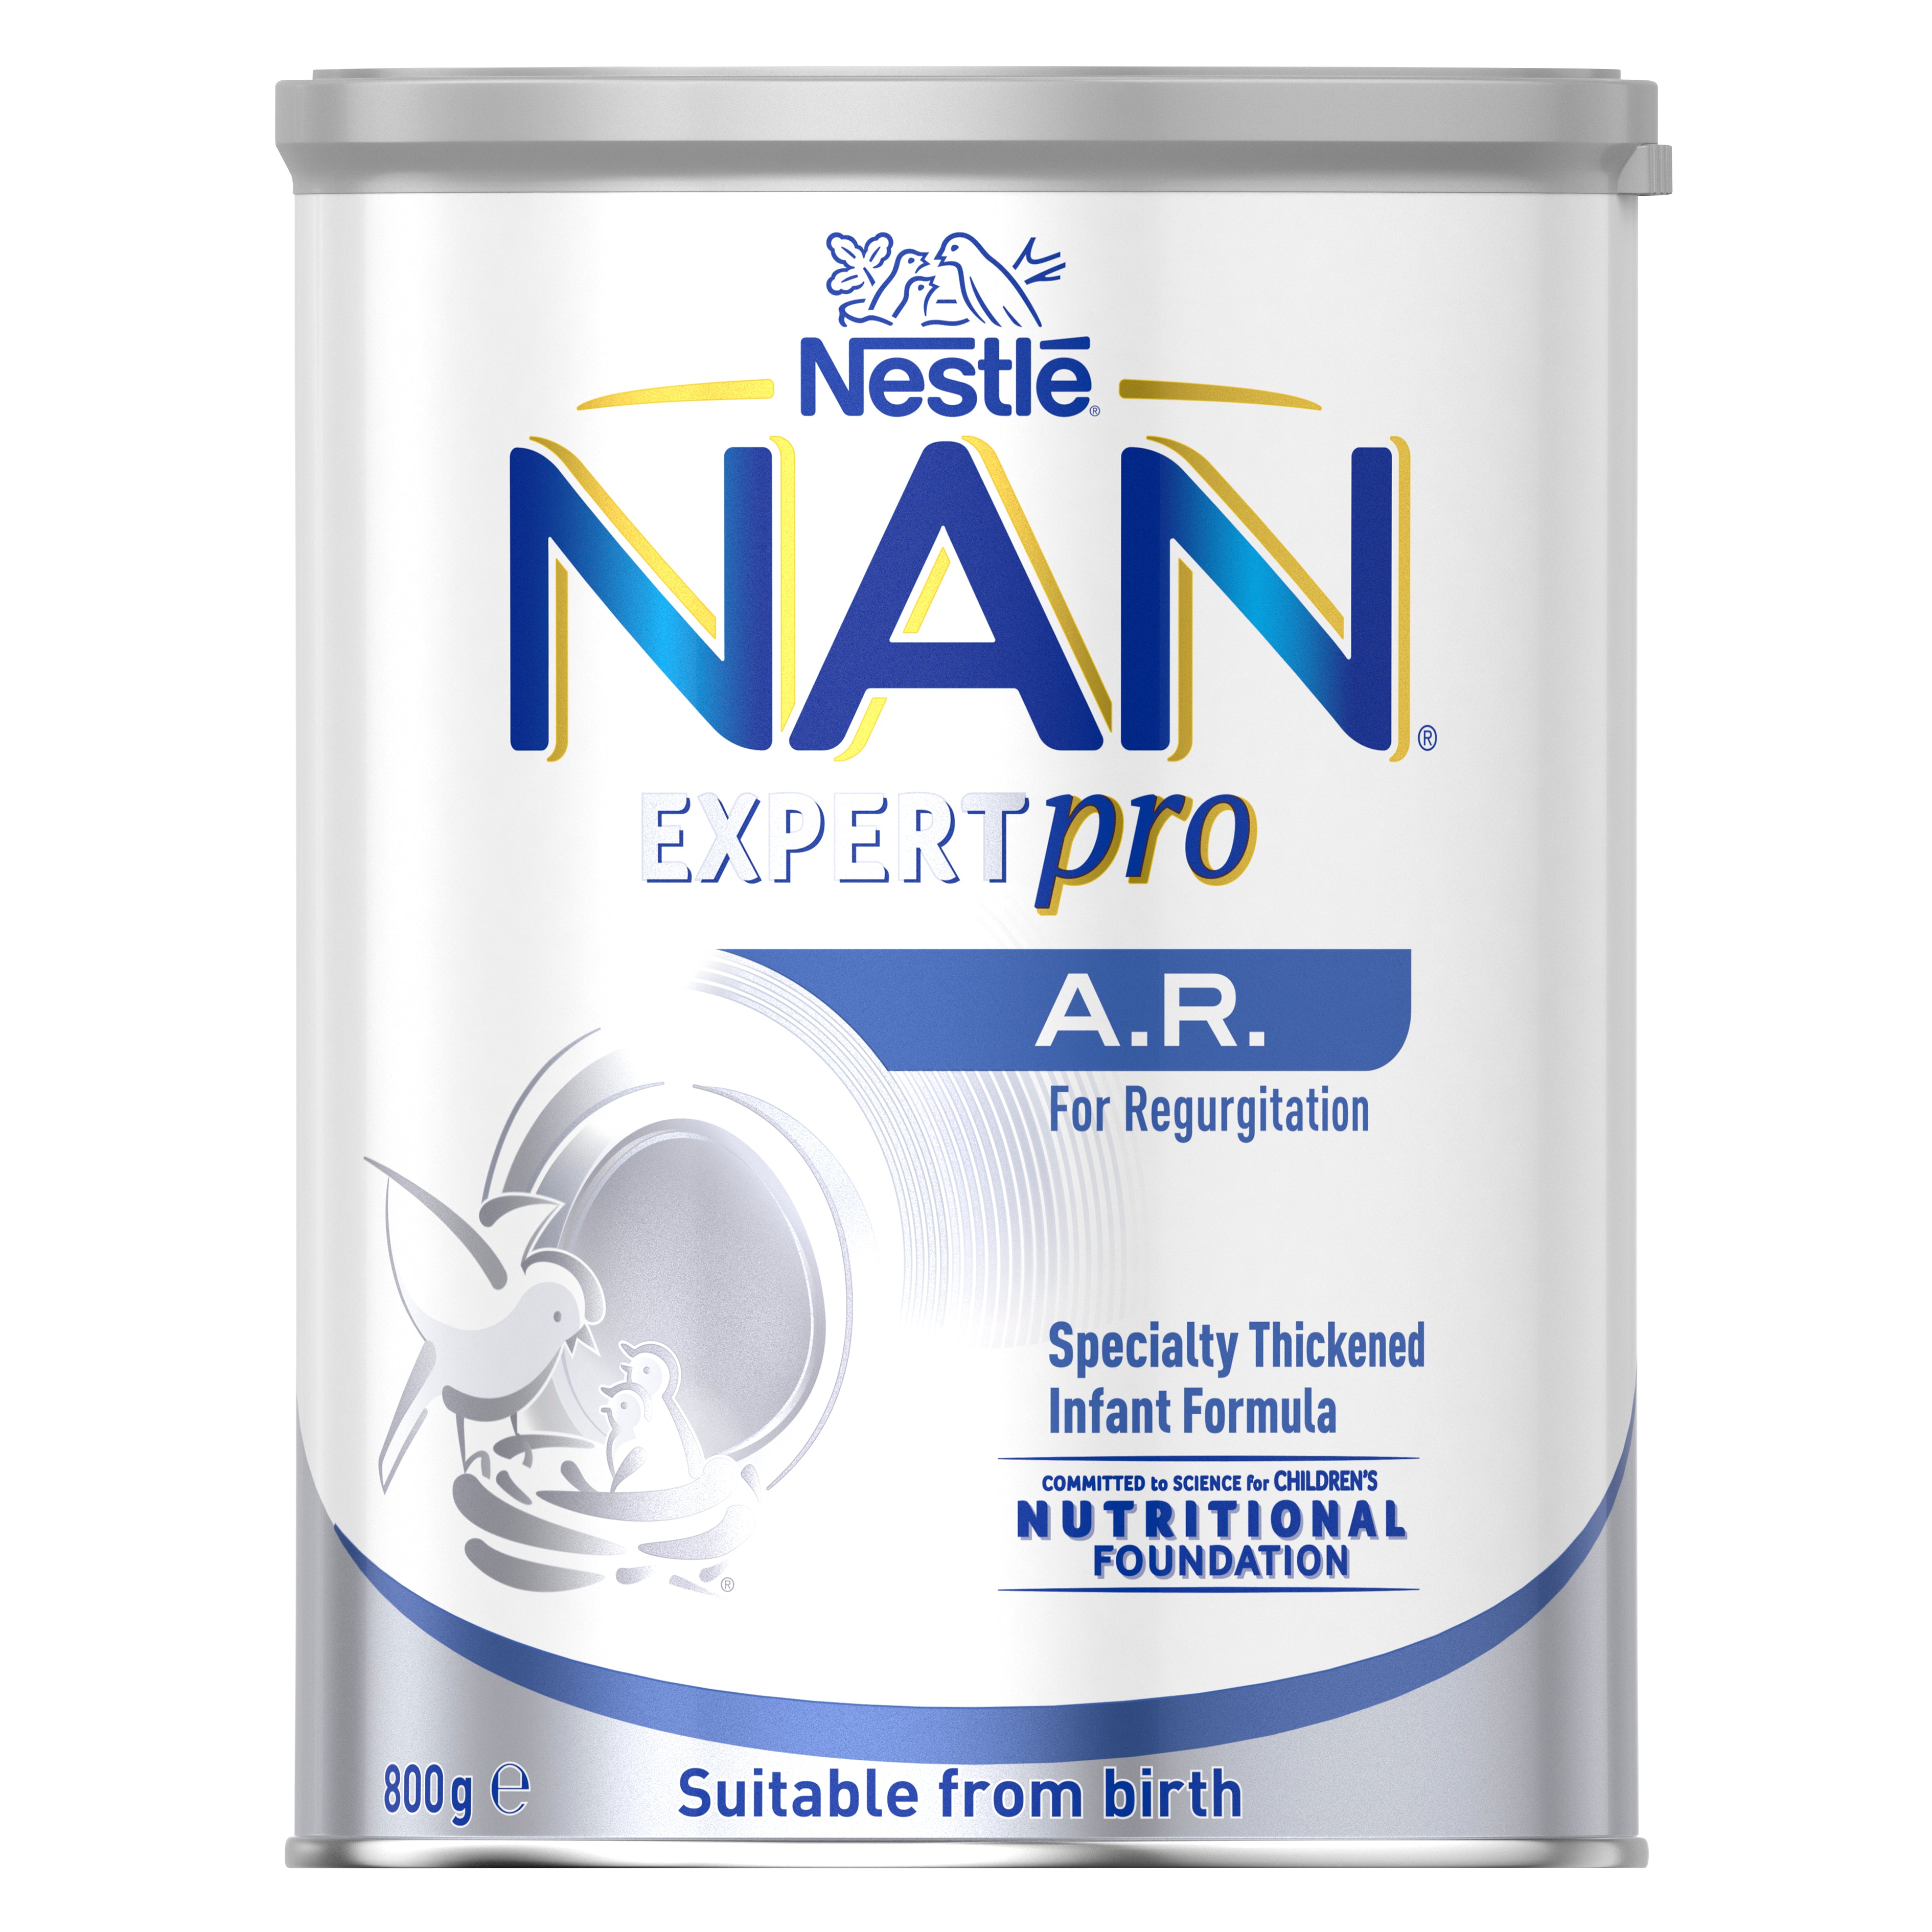 Leche Nan Pro 1 Nan